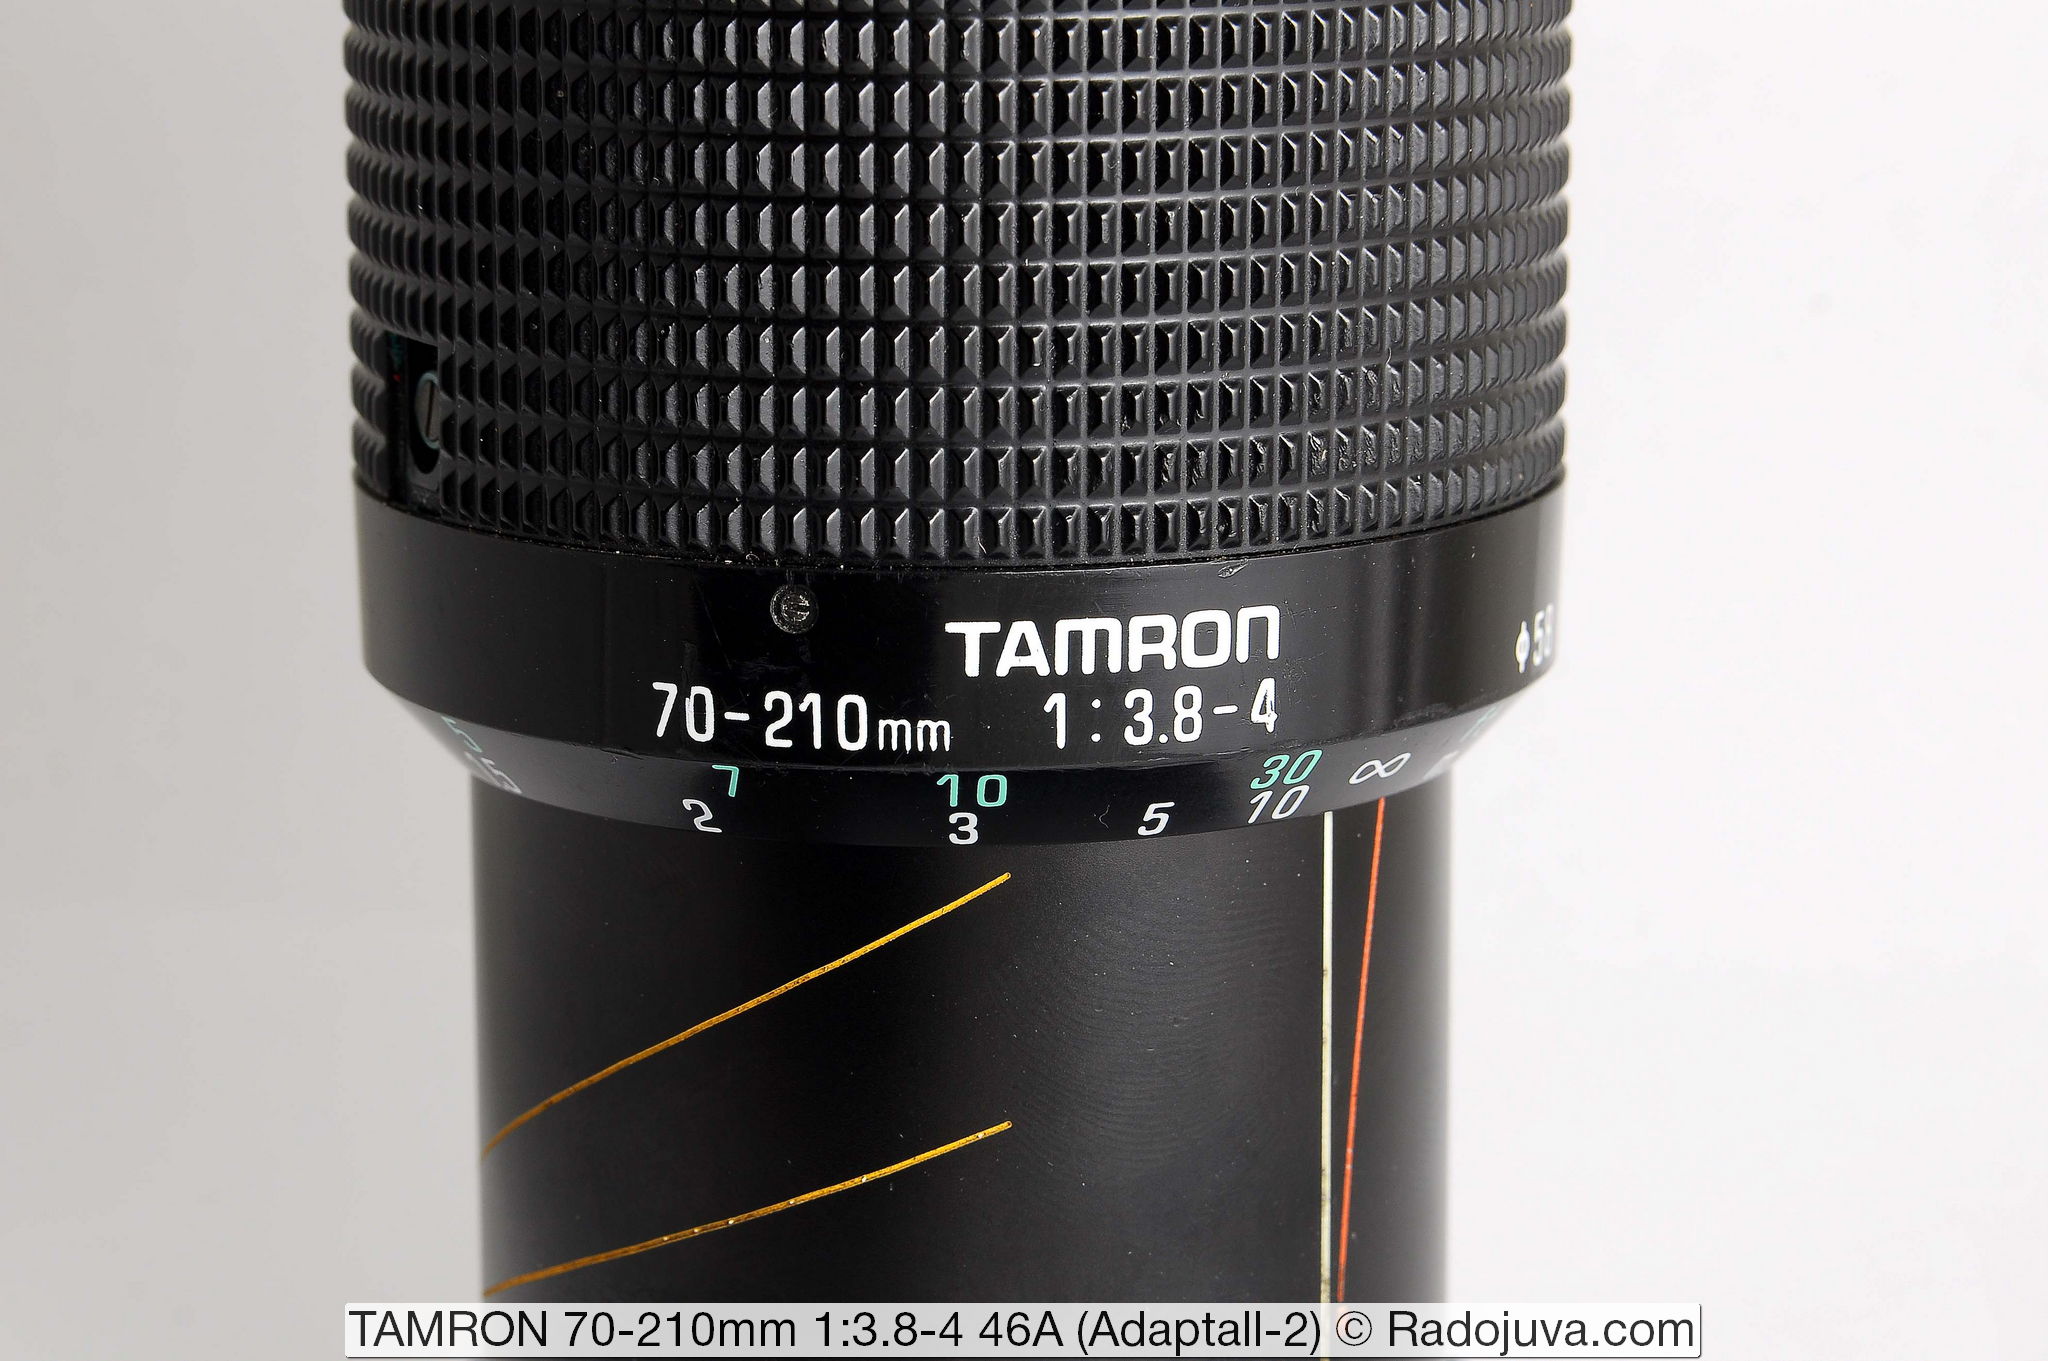 TAMRON 70-210mm 1:3.8-4 46A (Adaptall-2)